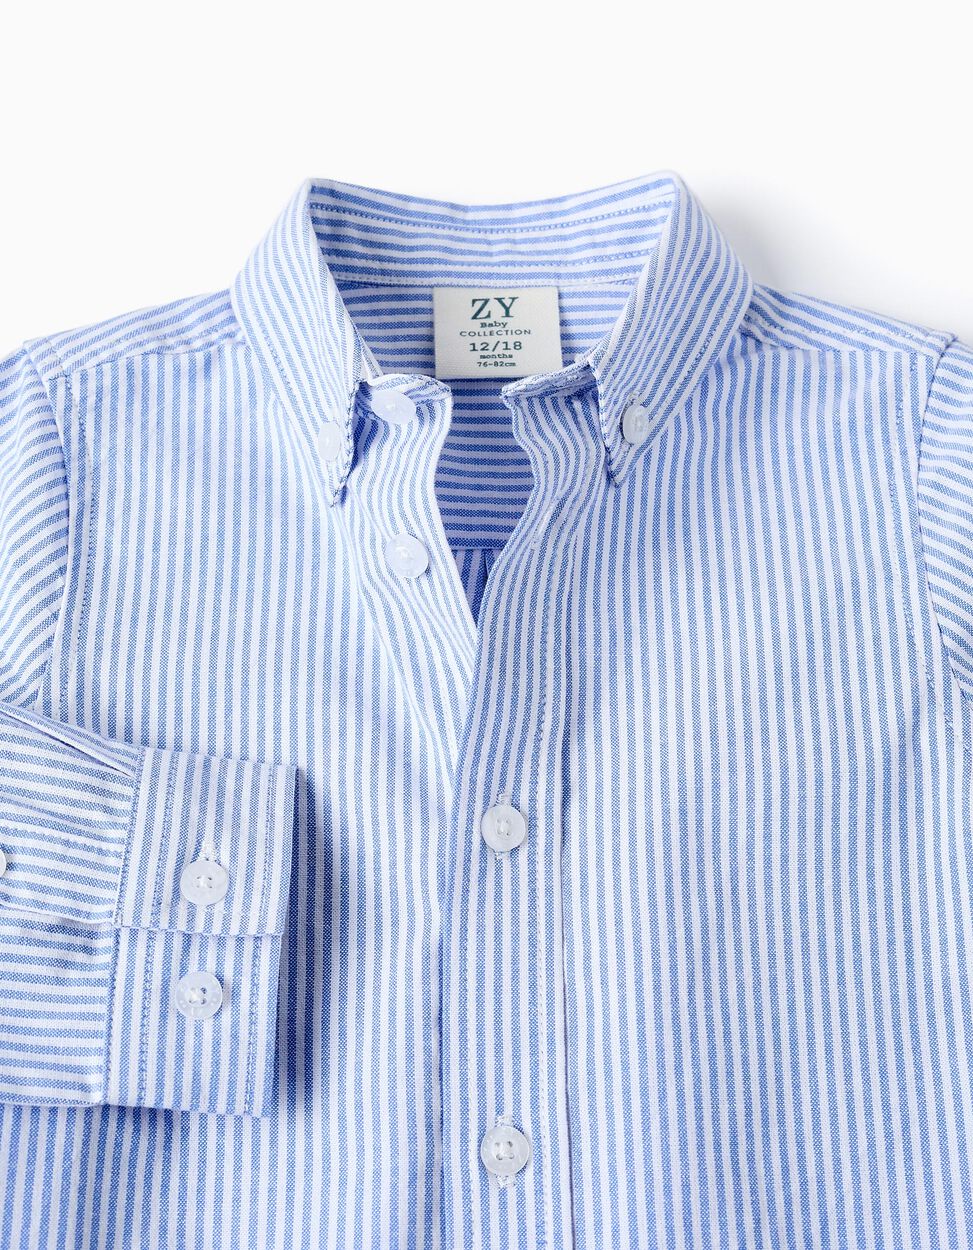 Comprar Online Camisa de Algodão às Riscas para Bebé Menino, Branco/Azul